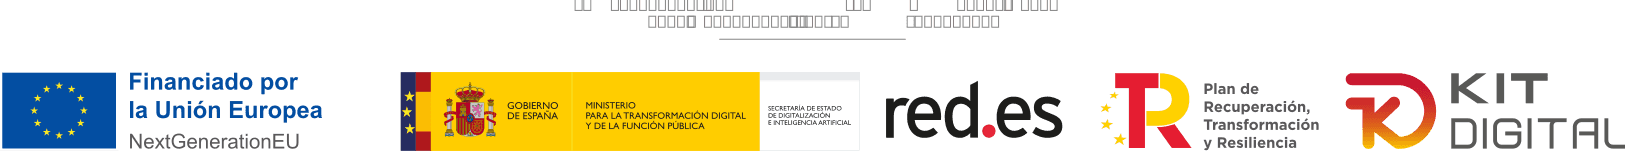 Logos Programa Kit Digital: Gobierno de España; red.es, kit digital, R, Financiado por la Unión Europea